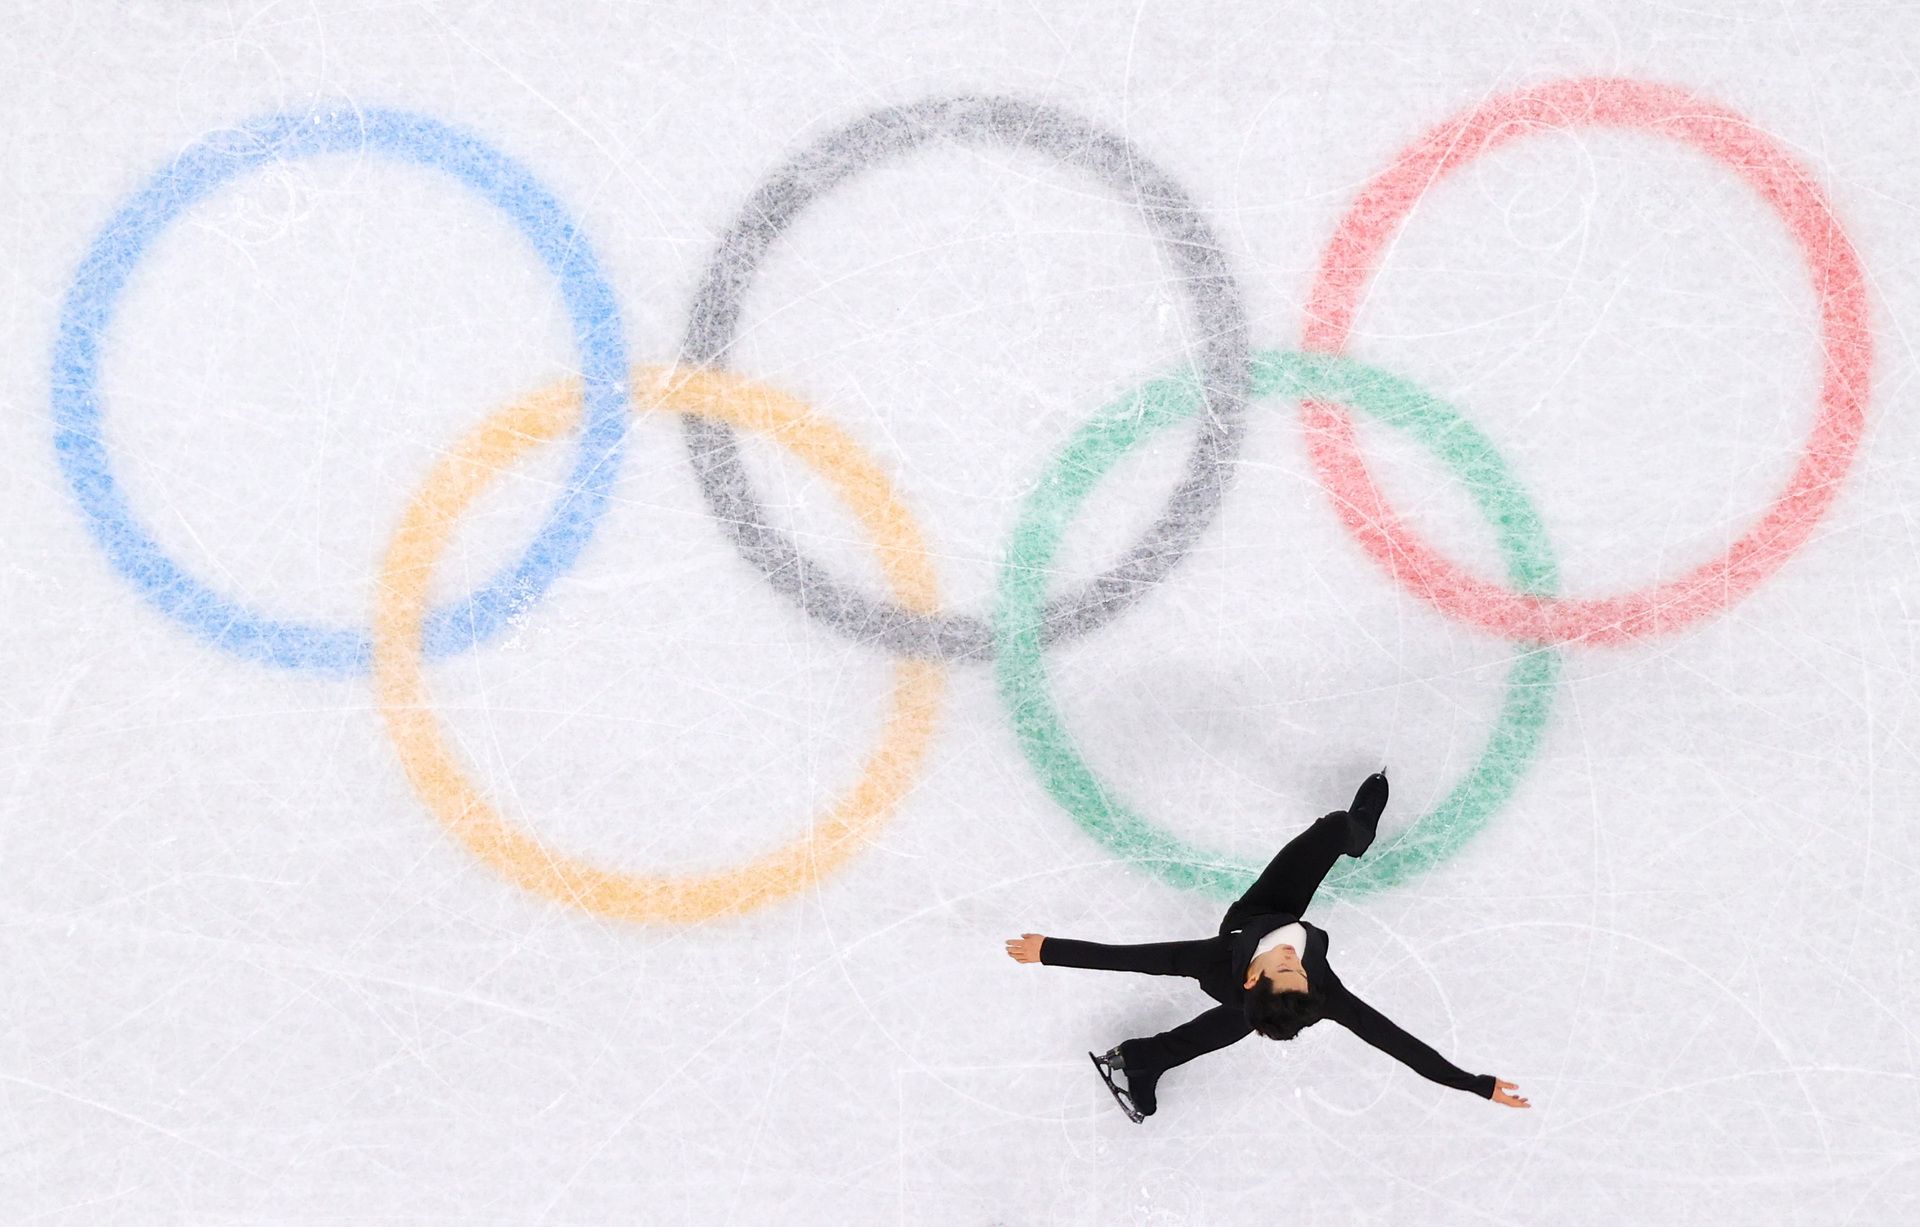 Disciplina de hielo en Juegos Olímpicos de Invierno